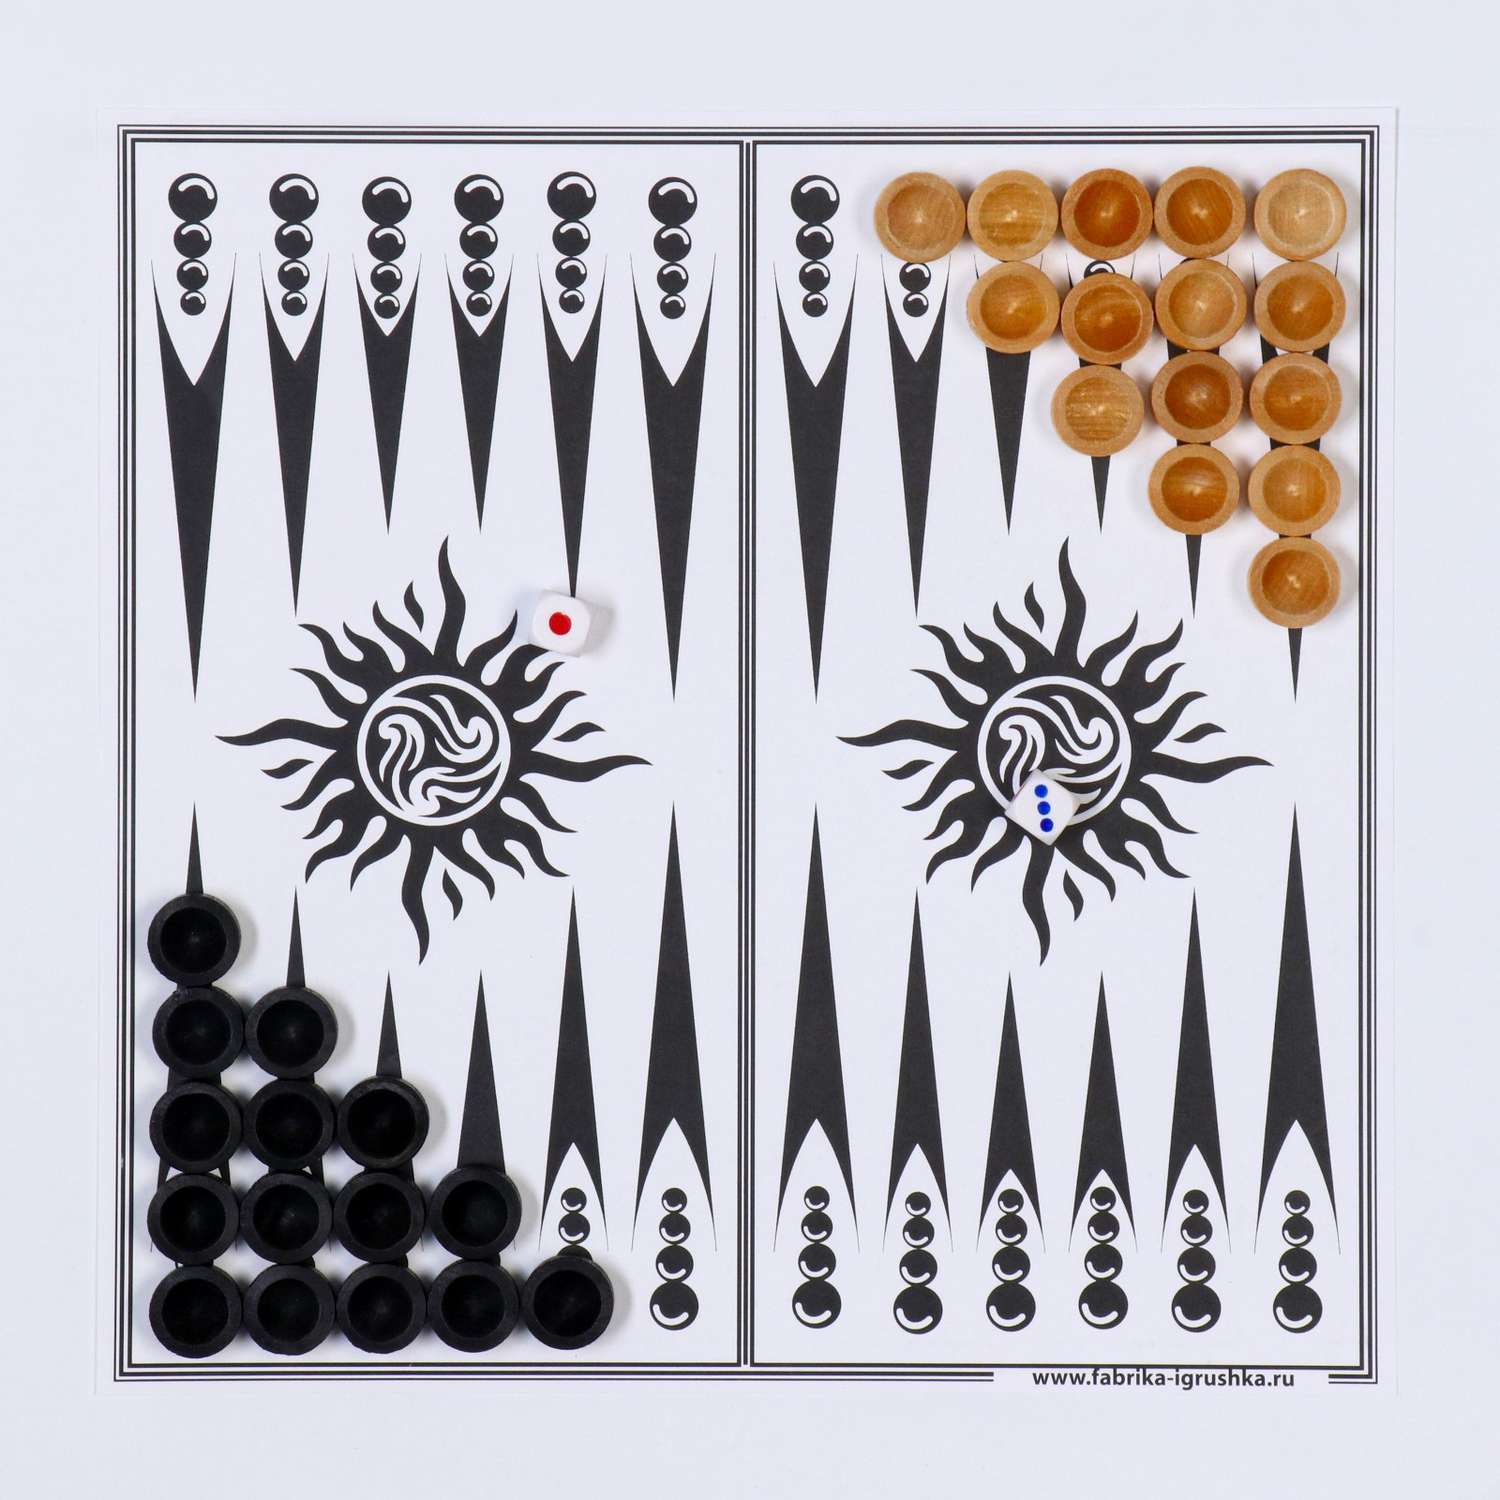 Настольная игра Sima-Land 3 в 1: шахматы шашки нарды деревянные фигуры доска 29.5 х 29.5 см - фото 3